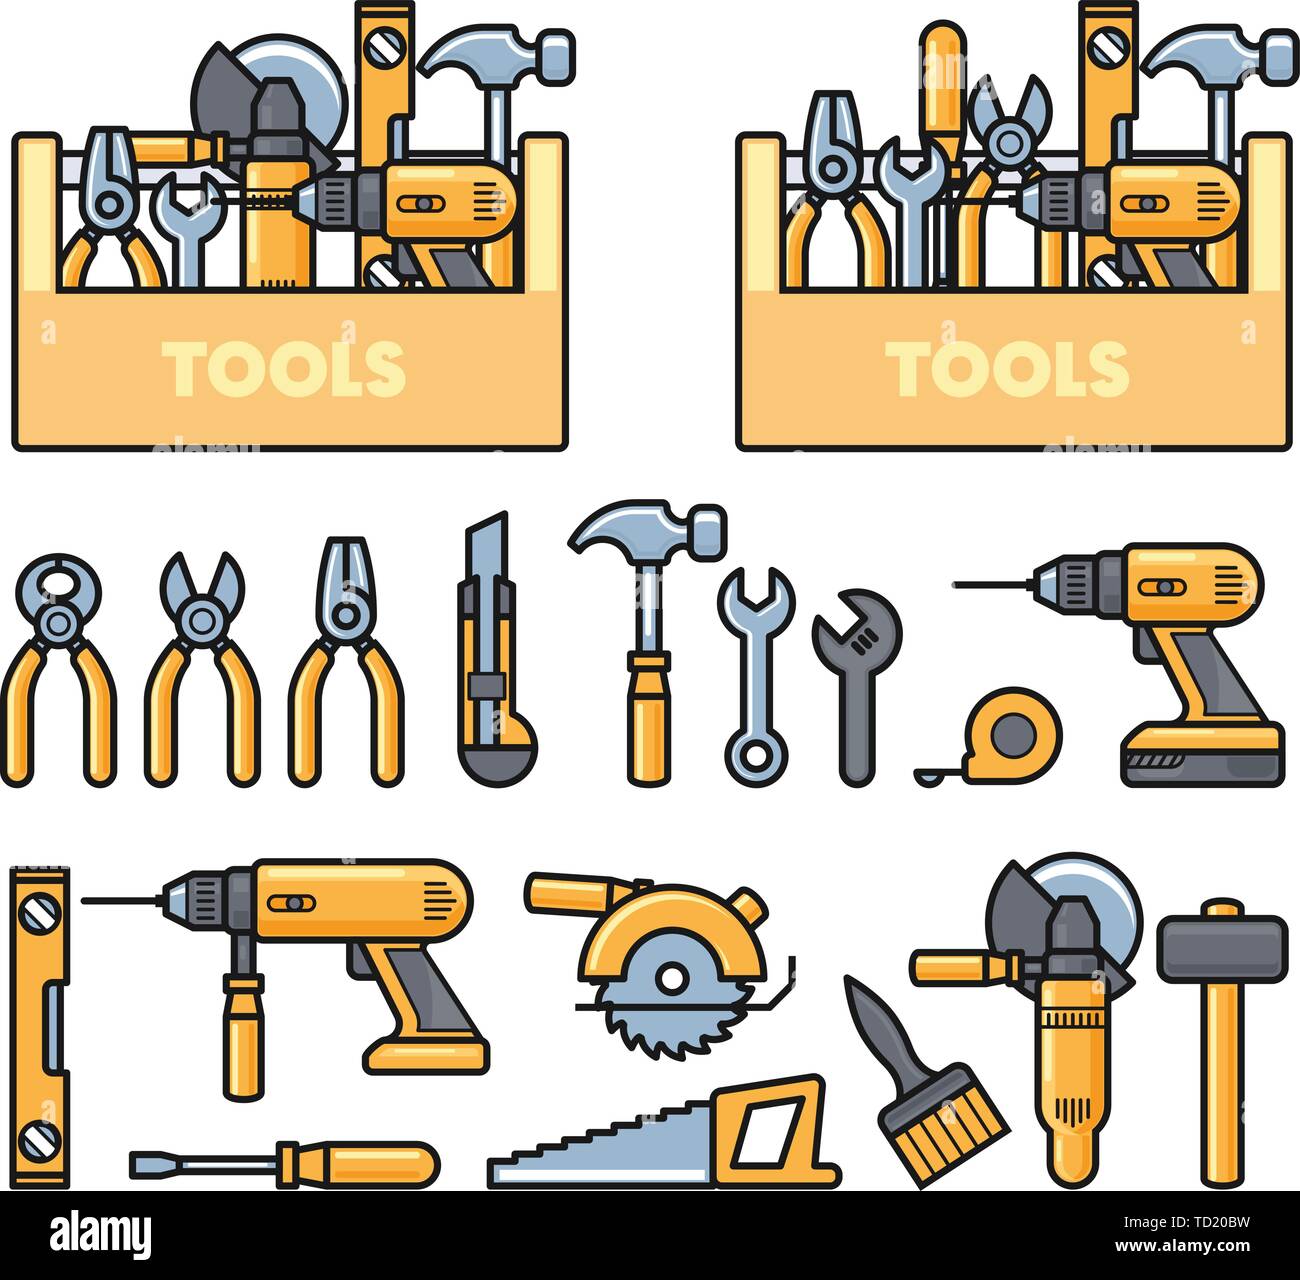 Die Arbeit tools icons-Toolbox, Locher, Bohrer, Schraubenschlüssel, Flugzeug, Säge, Zange und Construction Tools kit Stock Vektor